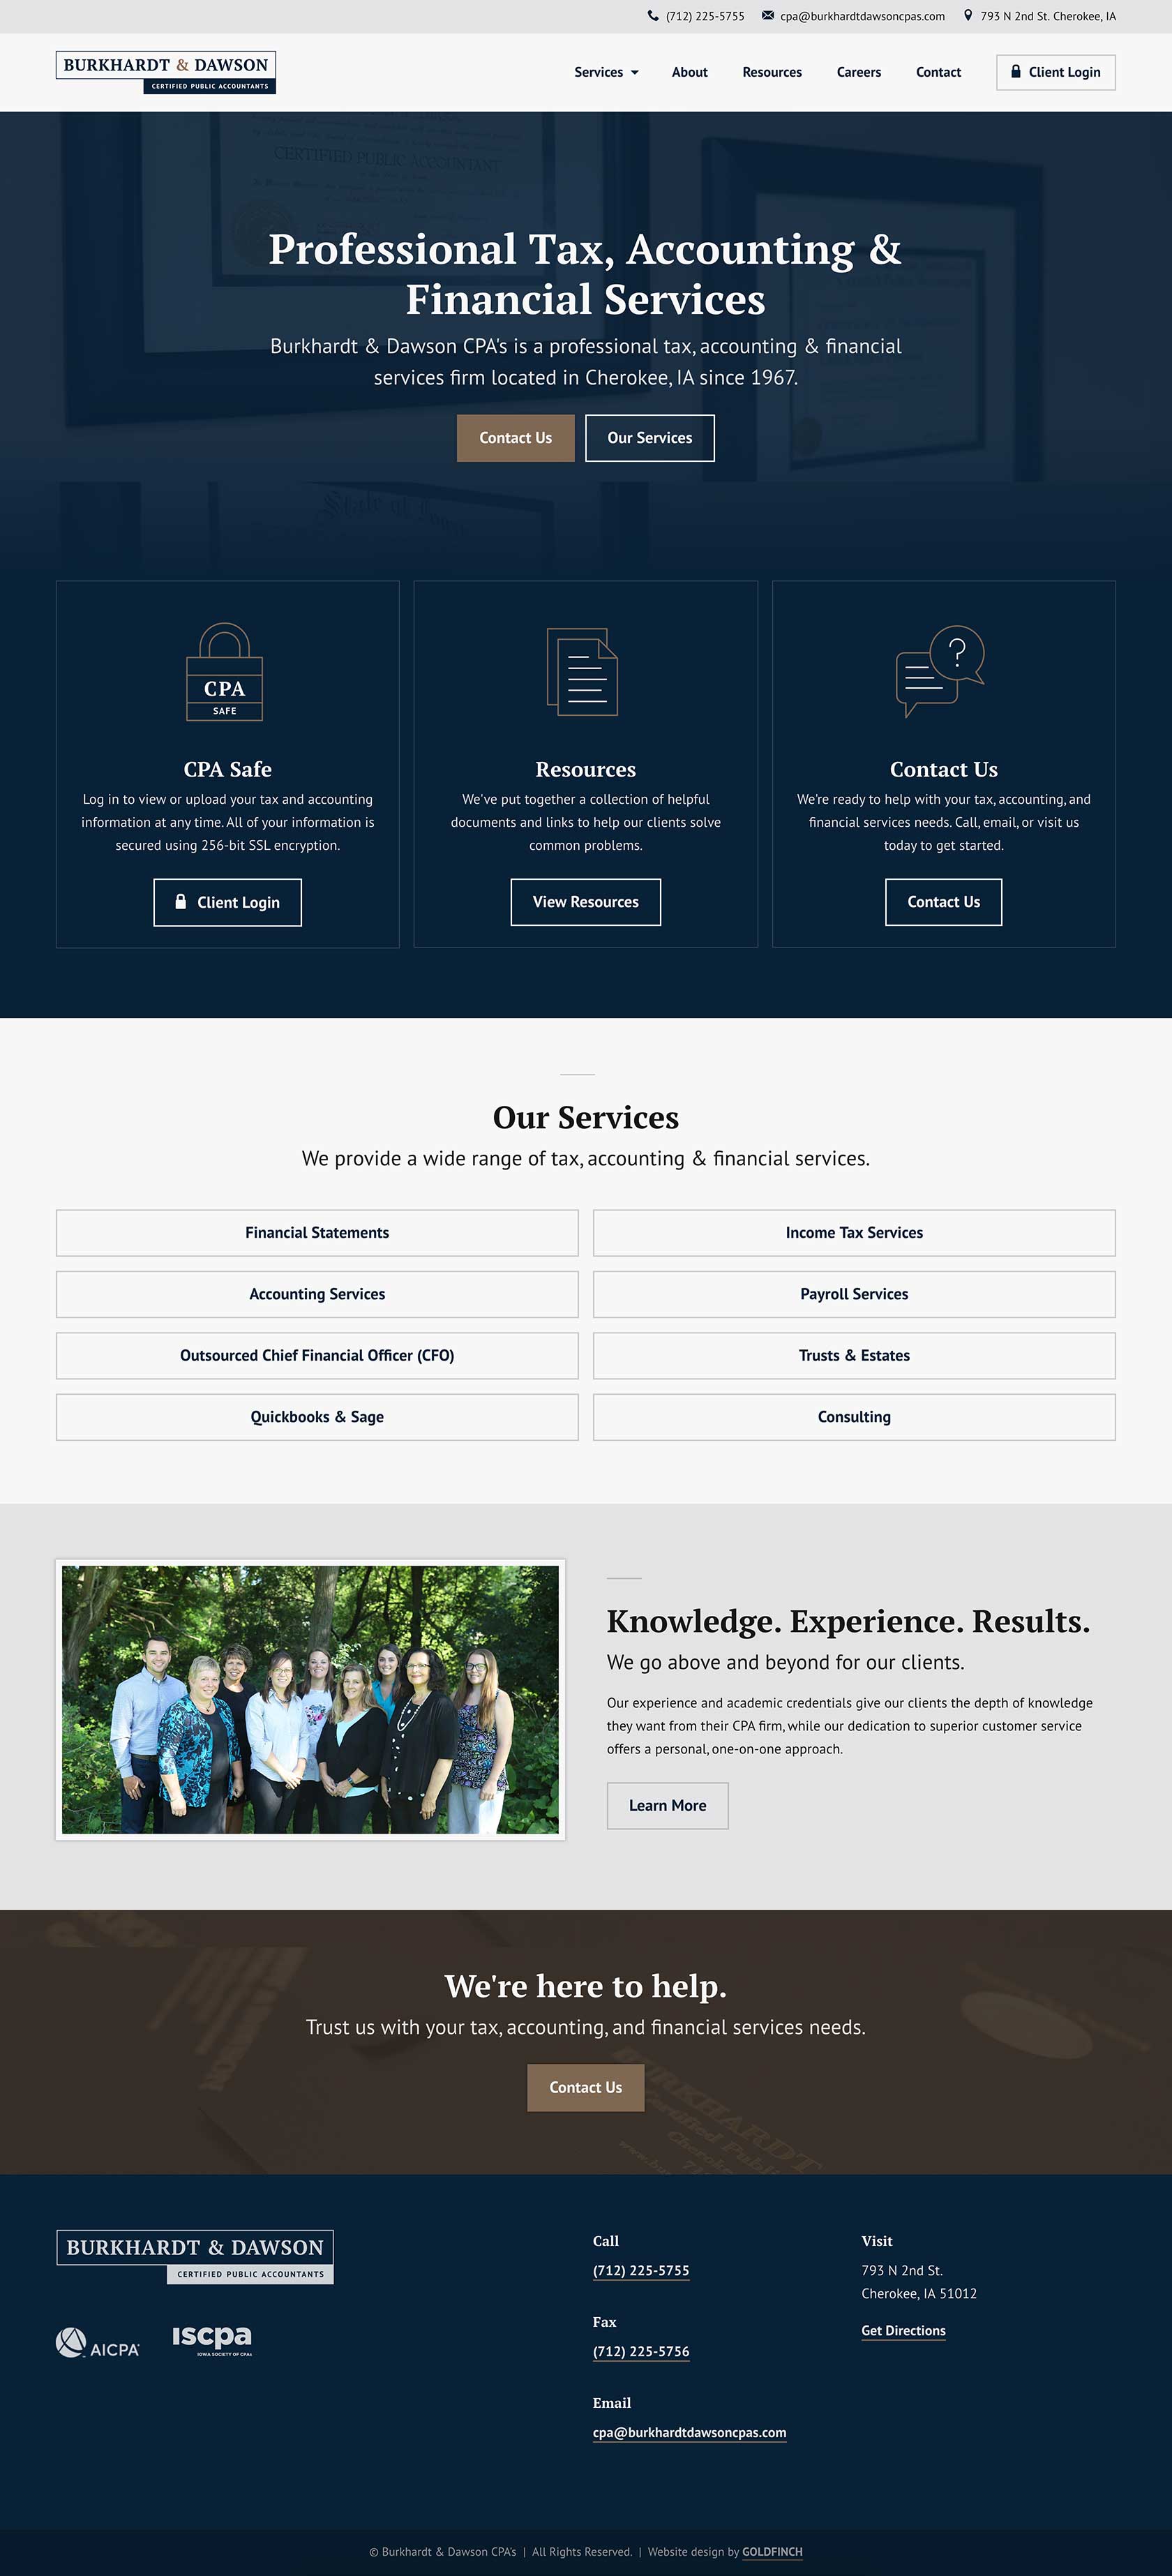 Burkhardt & Dawson CPA's Home Page Web Design